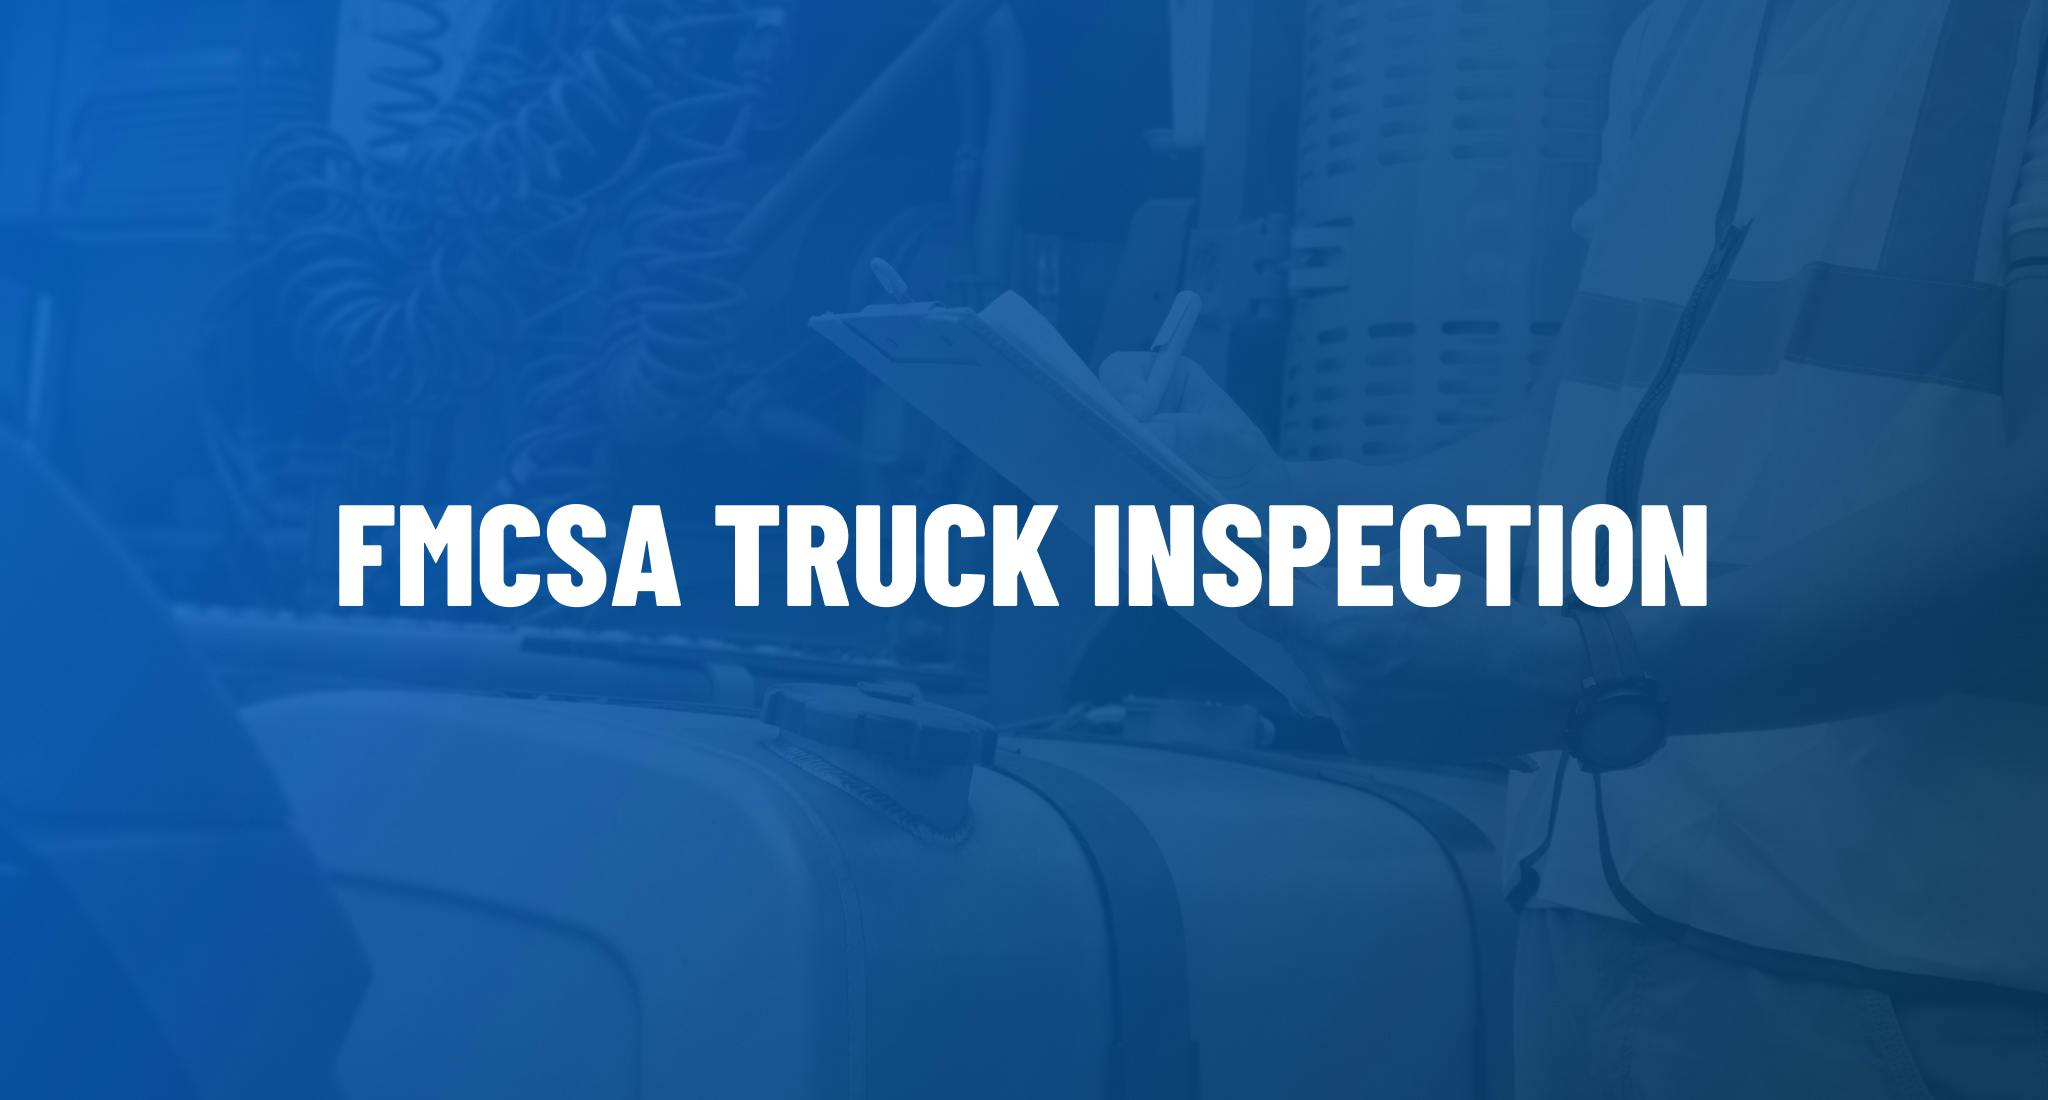 FMCSA Truck Inspection. 